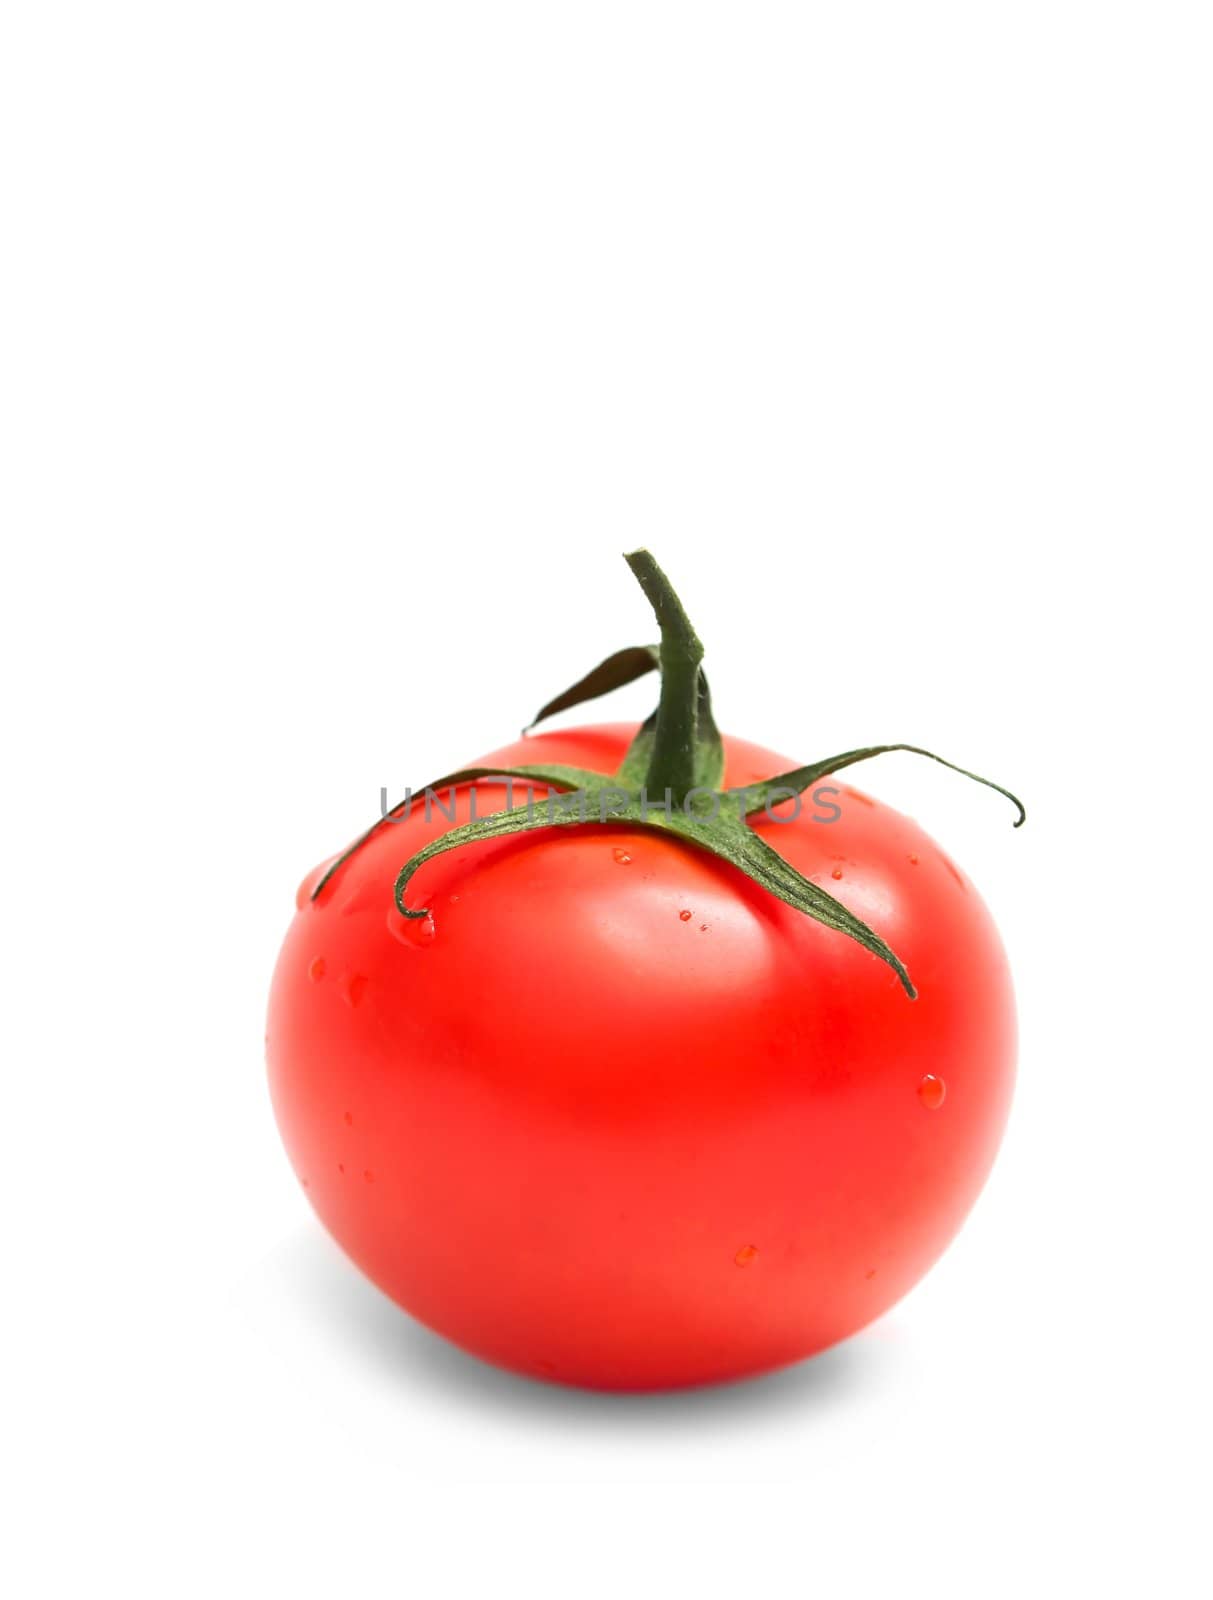 Tomato by Gudella